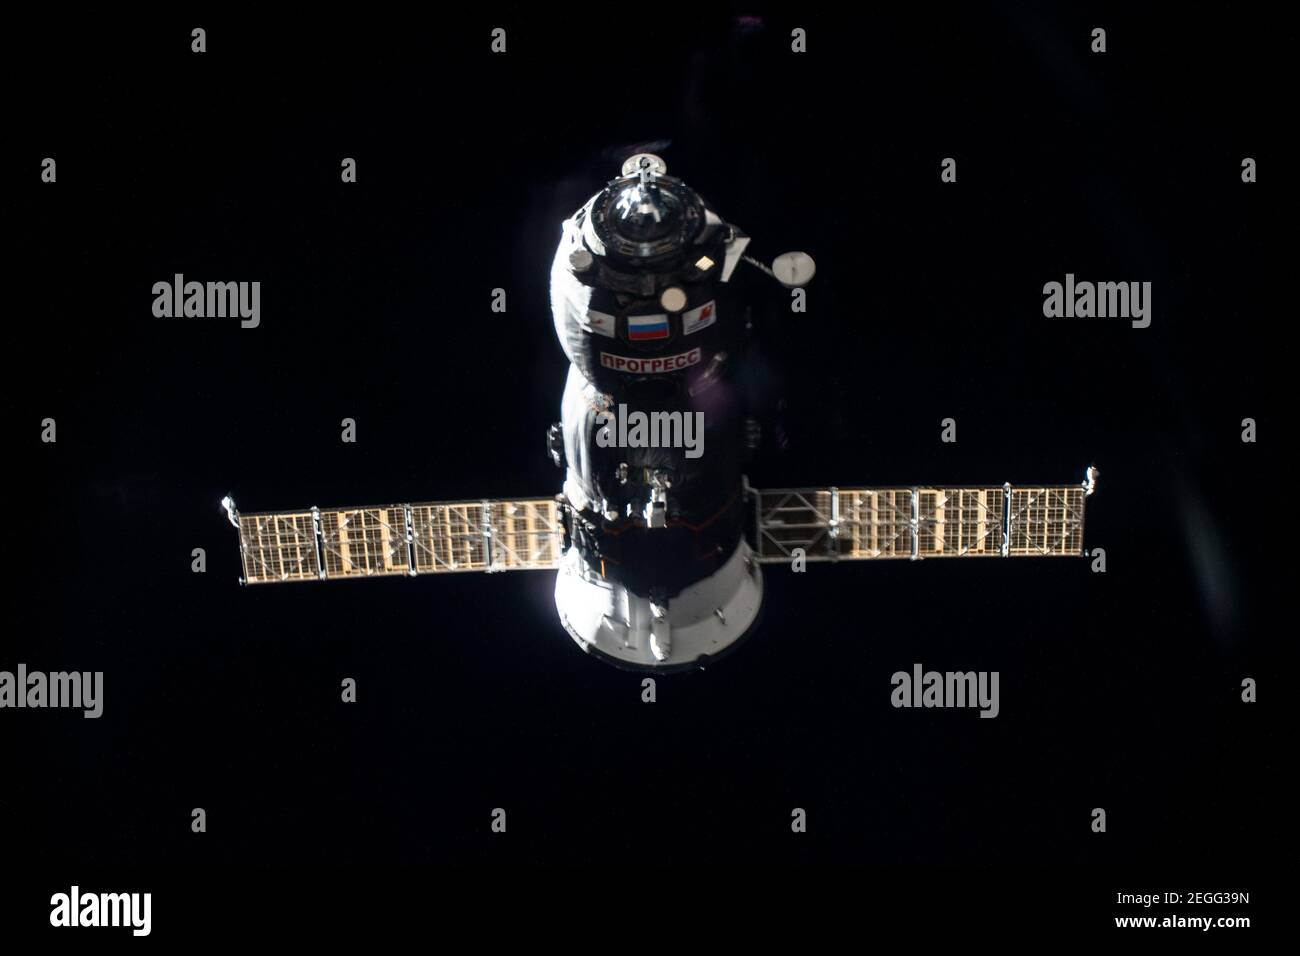 Estación Espacial Internacional, órbita terrestre. 17 de febrero de 2021. La nave espacial rusa no tripulada Progress 77 se aproxima al puerto de atraque de los Pirs en la Estación Espacial Internacional el 17 de febrero de 2021 en órbita terrestre. Un thruster se ve disparando durante una quemadura para afinar el camino hacia su puerto de acoplamiento. Crédito: Planetpix/Alamy Live News Foto de stock